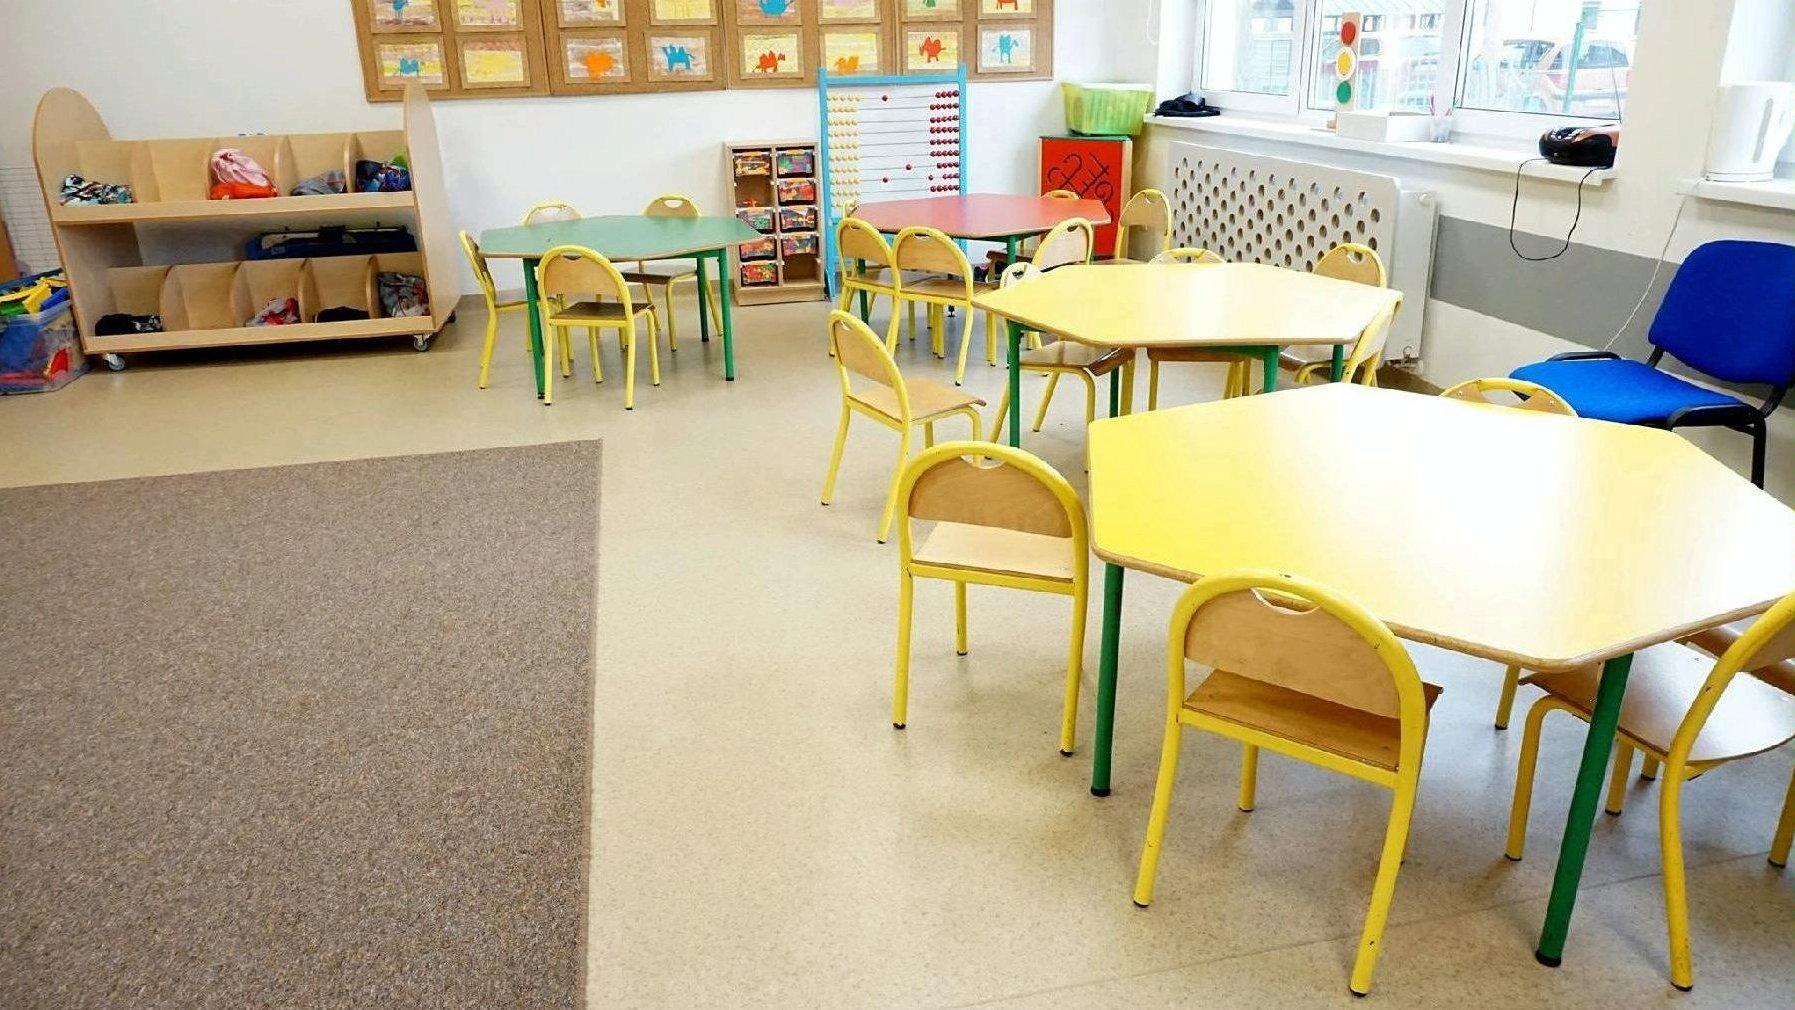 Zdjęcie przedstawia salę, w której znajdują się małe stoliczki z krzesełkami. Na ścianie wiszą prace dzieci, w tle widać liczydło oraz szafkę. - grafika artykułu